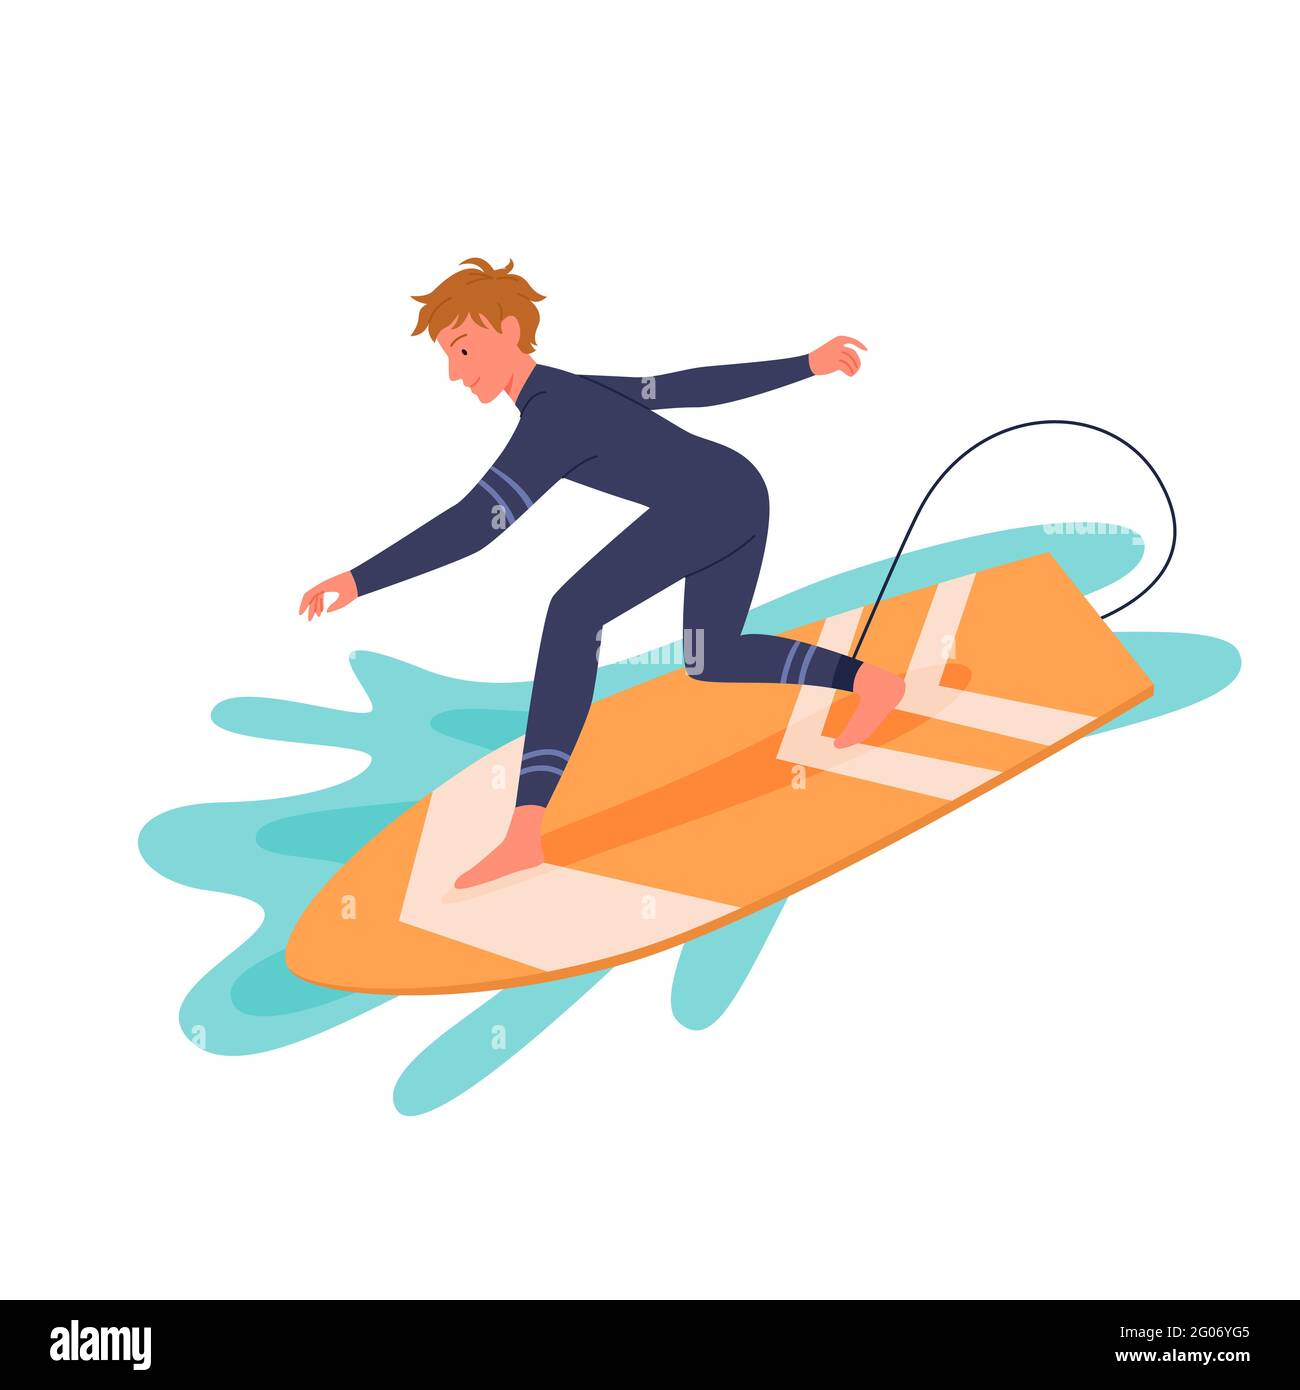 Surfmann im Neoprenanzug am Surfbrett, aktiver, fröhlicher junger Surfer, der die Meereswelle fängt Stock Vektor